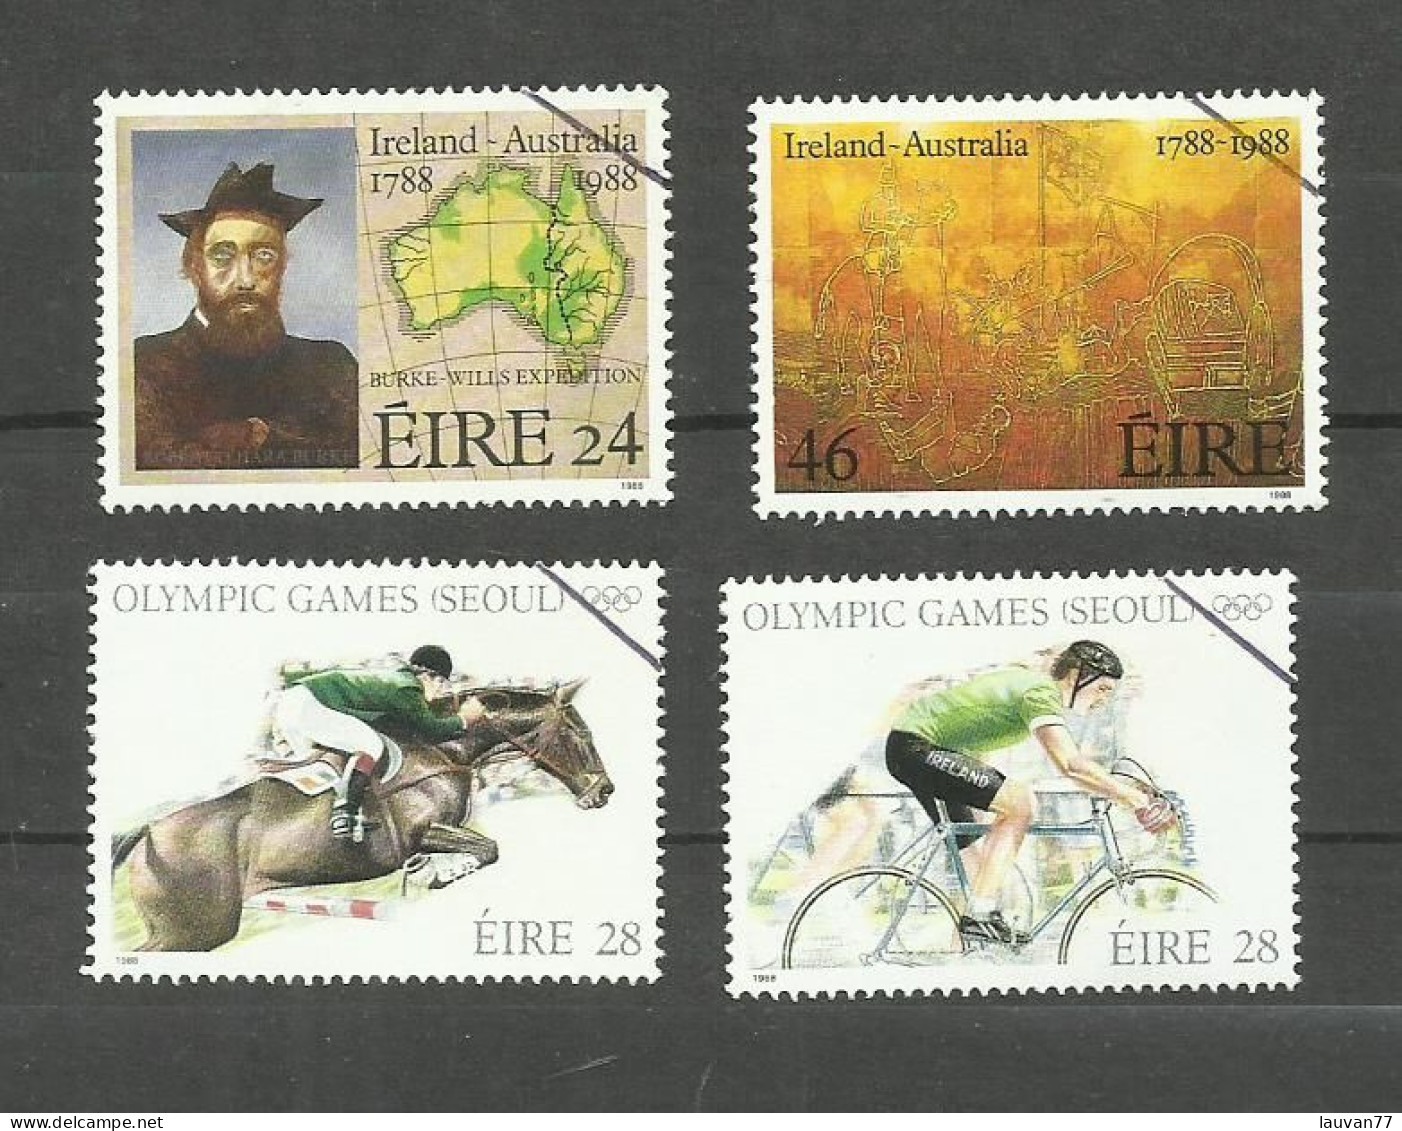 Irlande N°646 à 649 Cote 5.75€ - Used Stamps